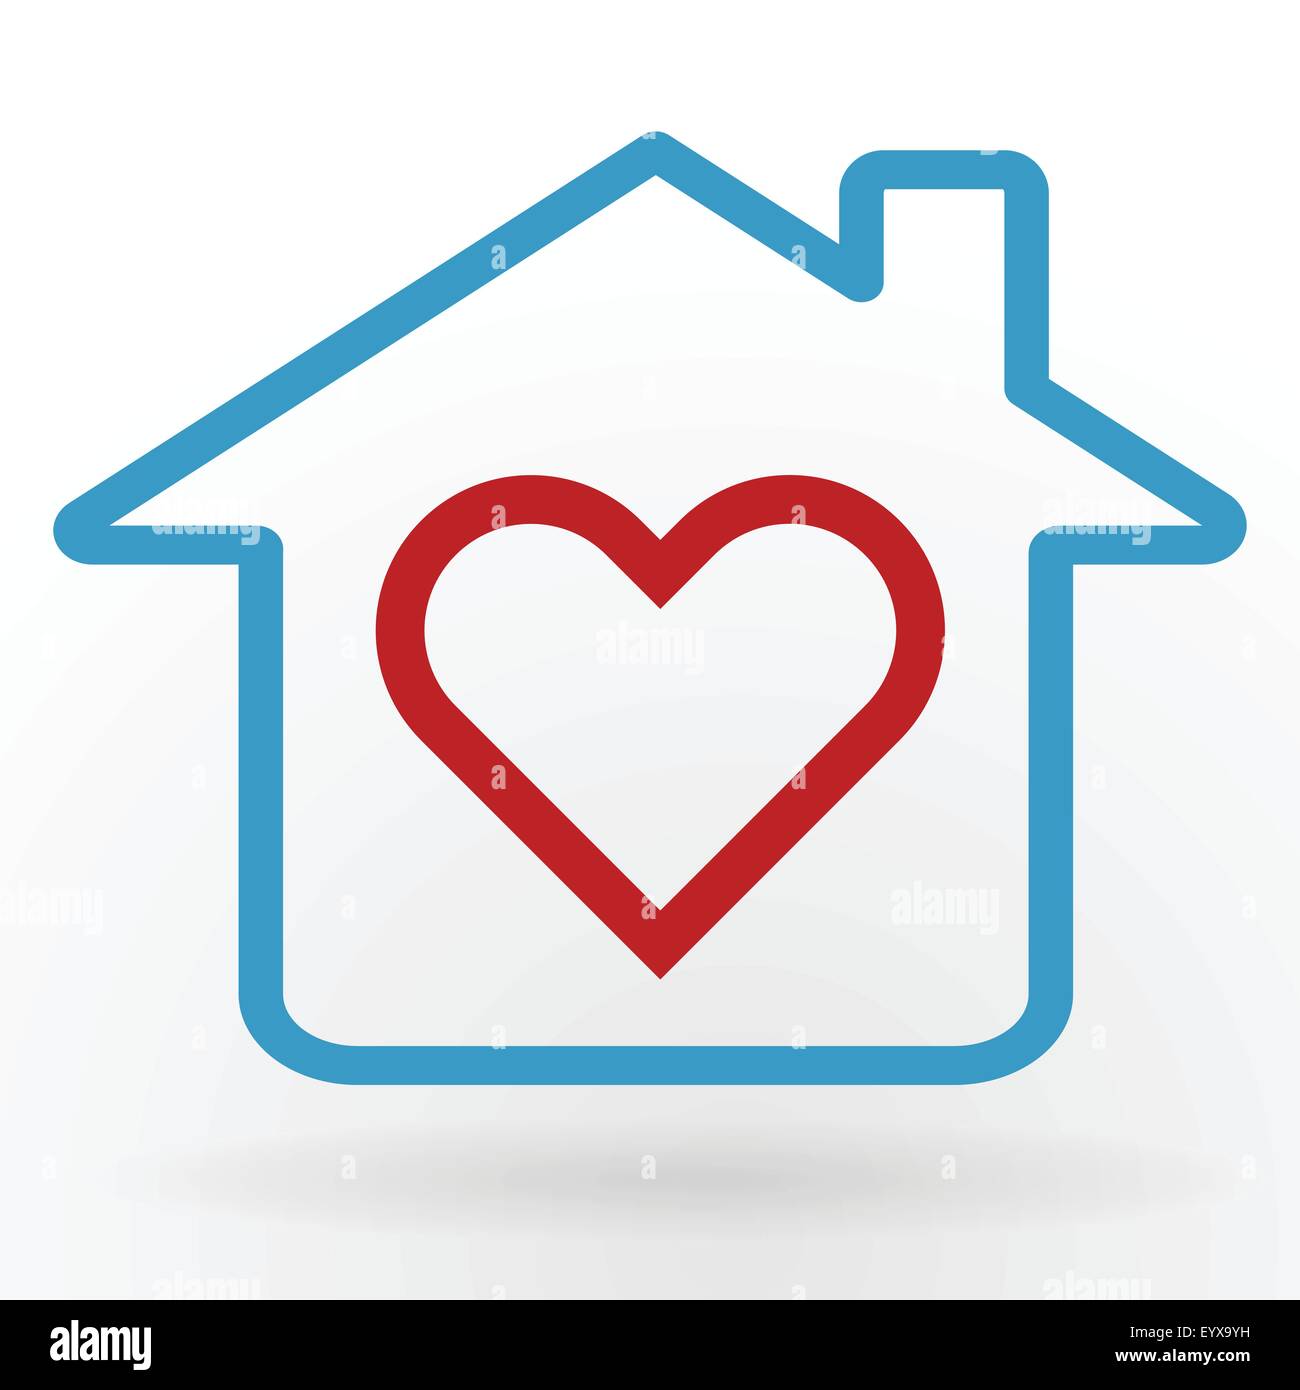 Herzsymbol im Hause glückliche Familie und Liebe Konzept-Vektor-Illustration. Stock Vektor